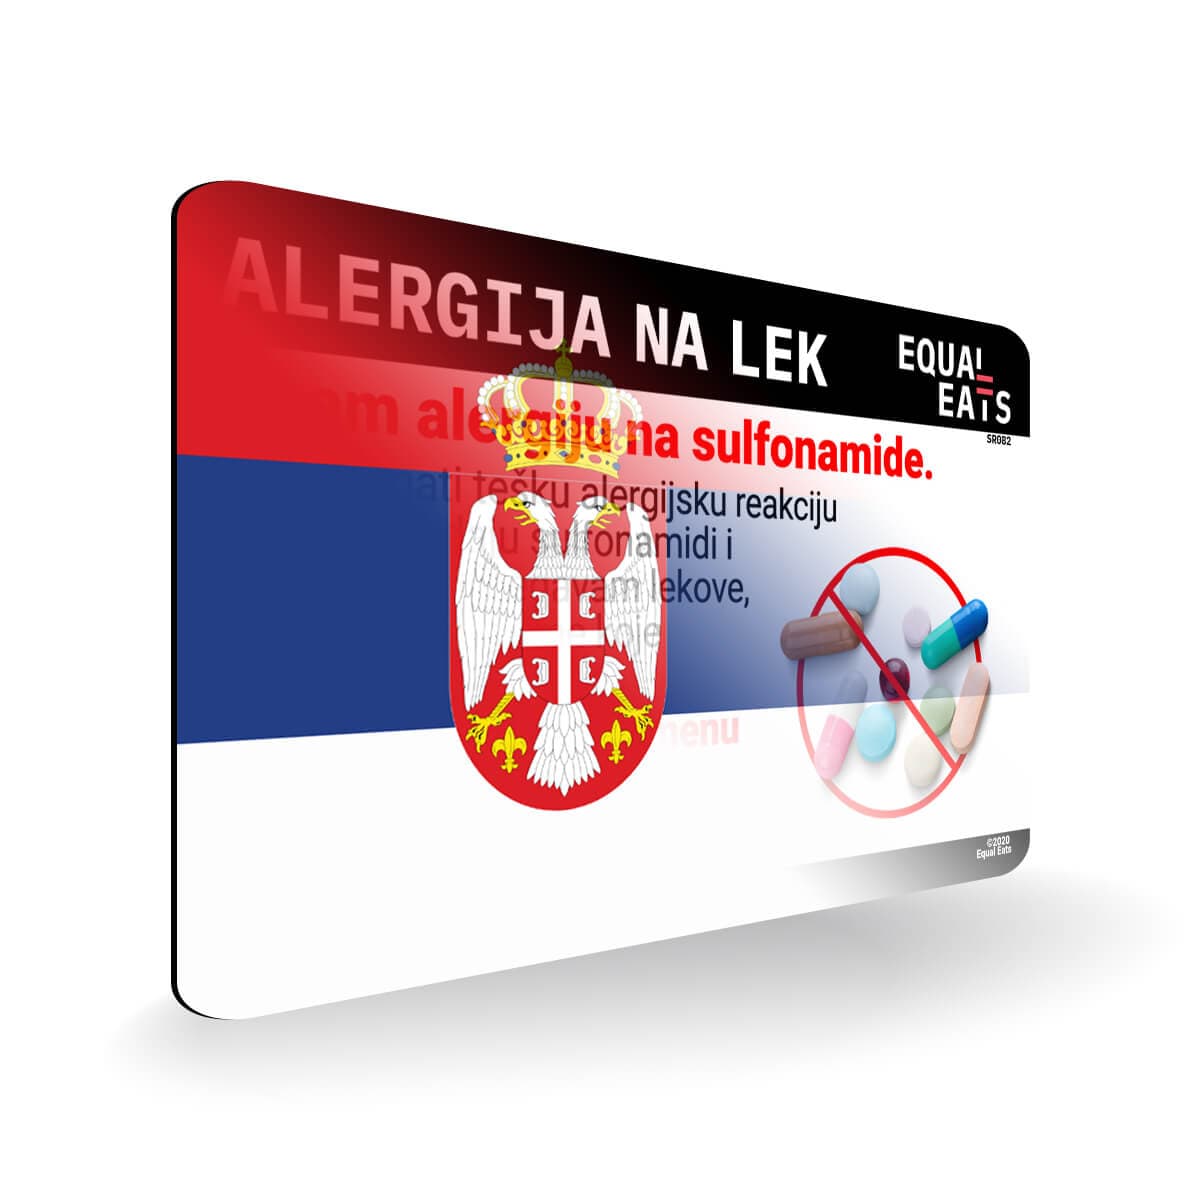 Sulfa Allergy in Serbian. Sulfa Medicine Allergy Card for Serbia